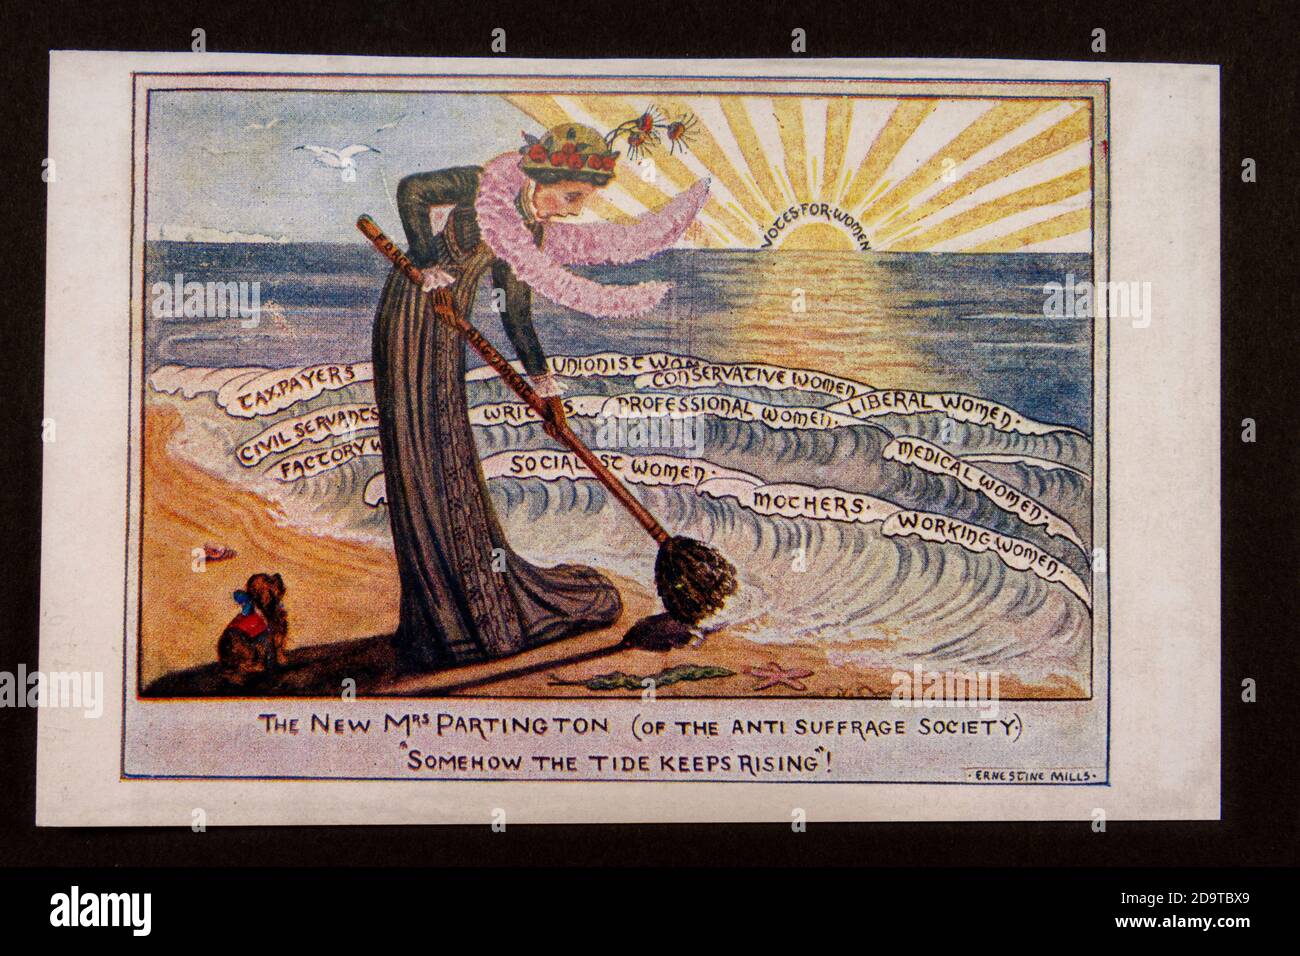 Affiche de la Société anti-suffrage 'Somehow the Tide continue Rising', réplique de souvenirs relatifs au mouvement des suffragettes en Grande-Bretagne. Banque D'Images